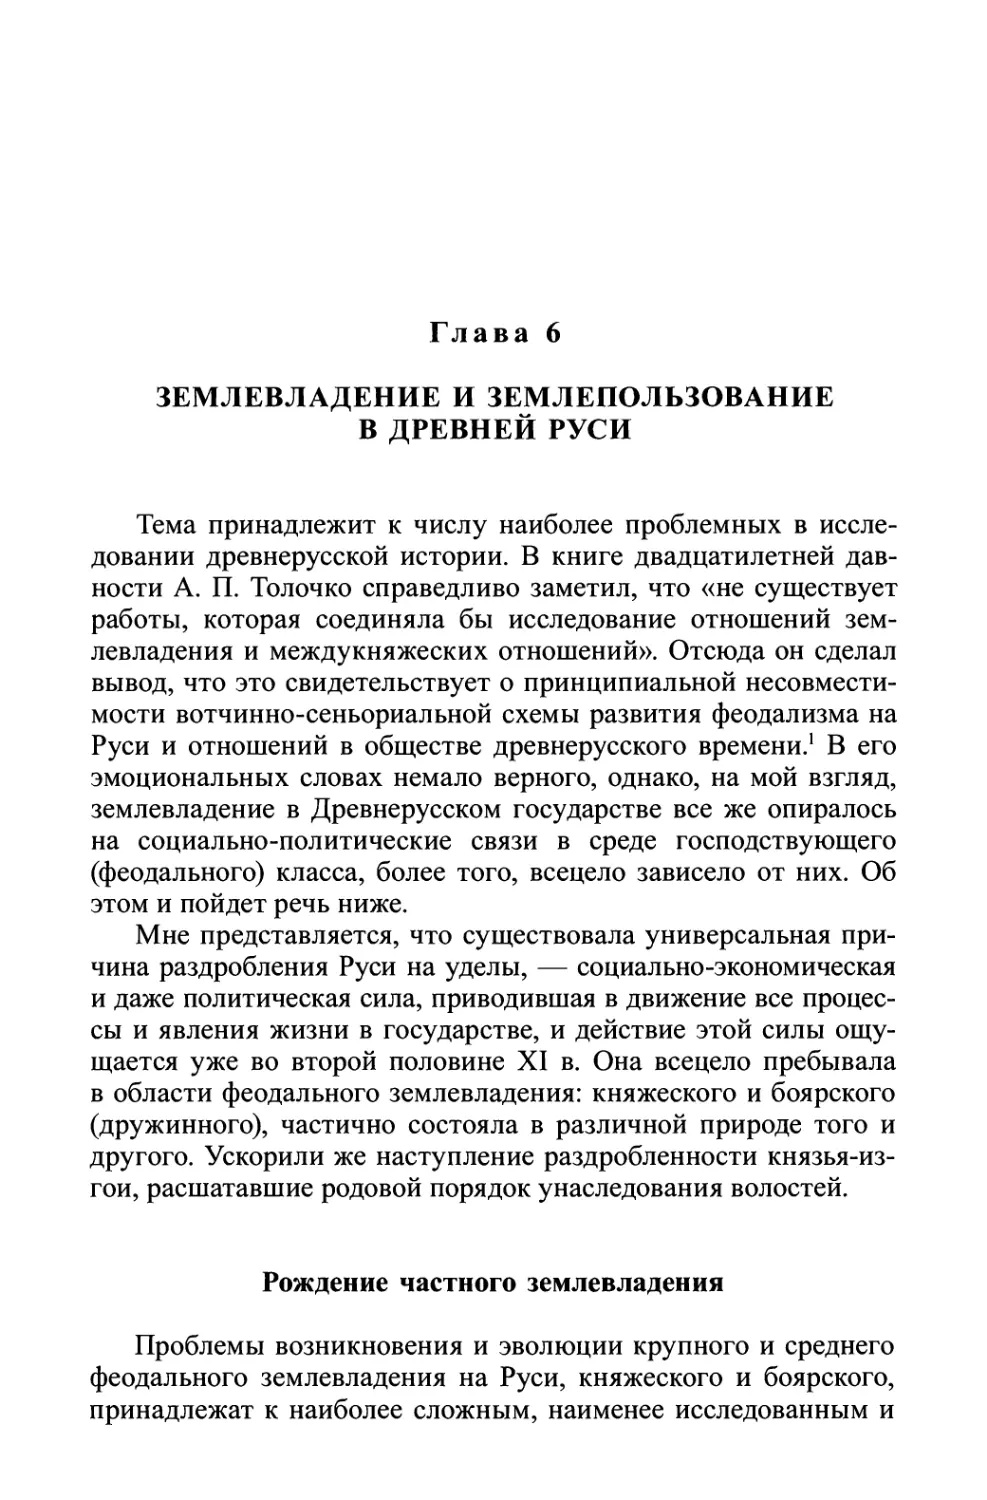 Глава 6. Землевладение и землепользование в Древней Руси